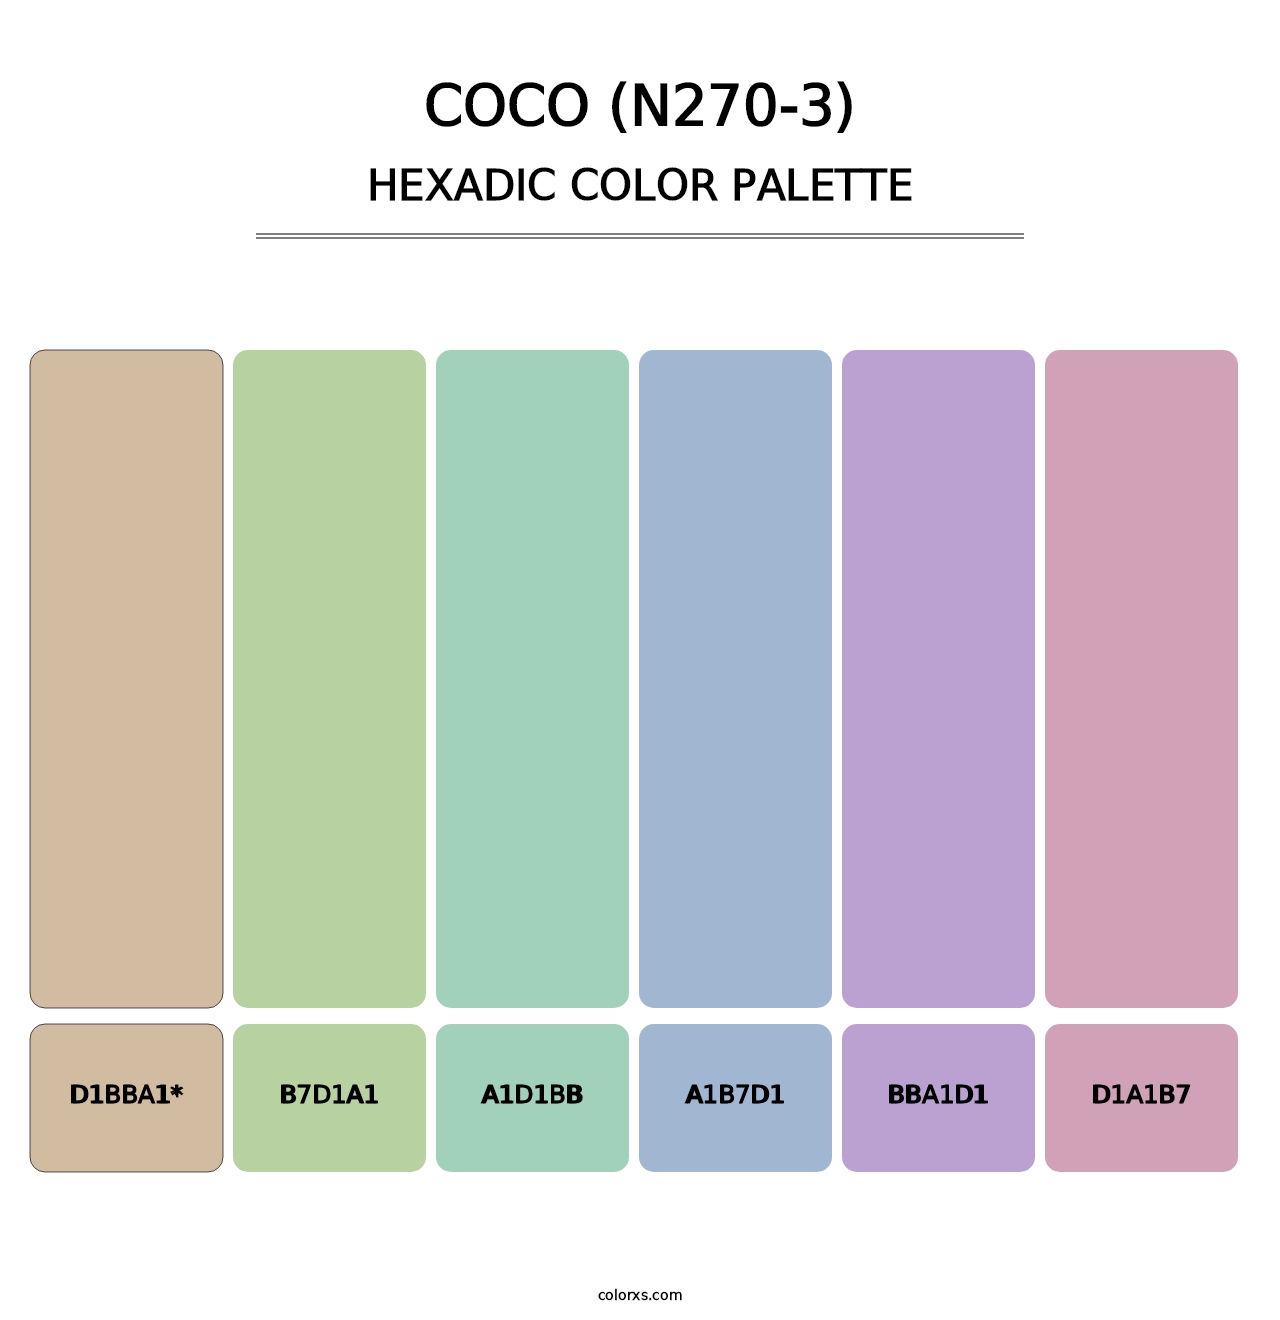 Coco (N270-3) - Hexadic Color Palette